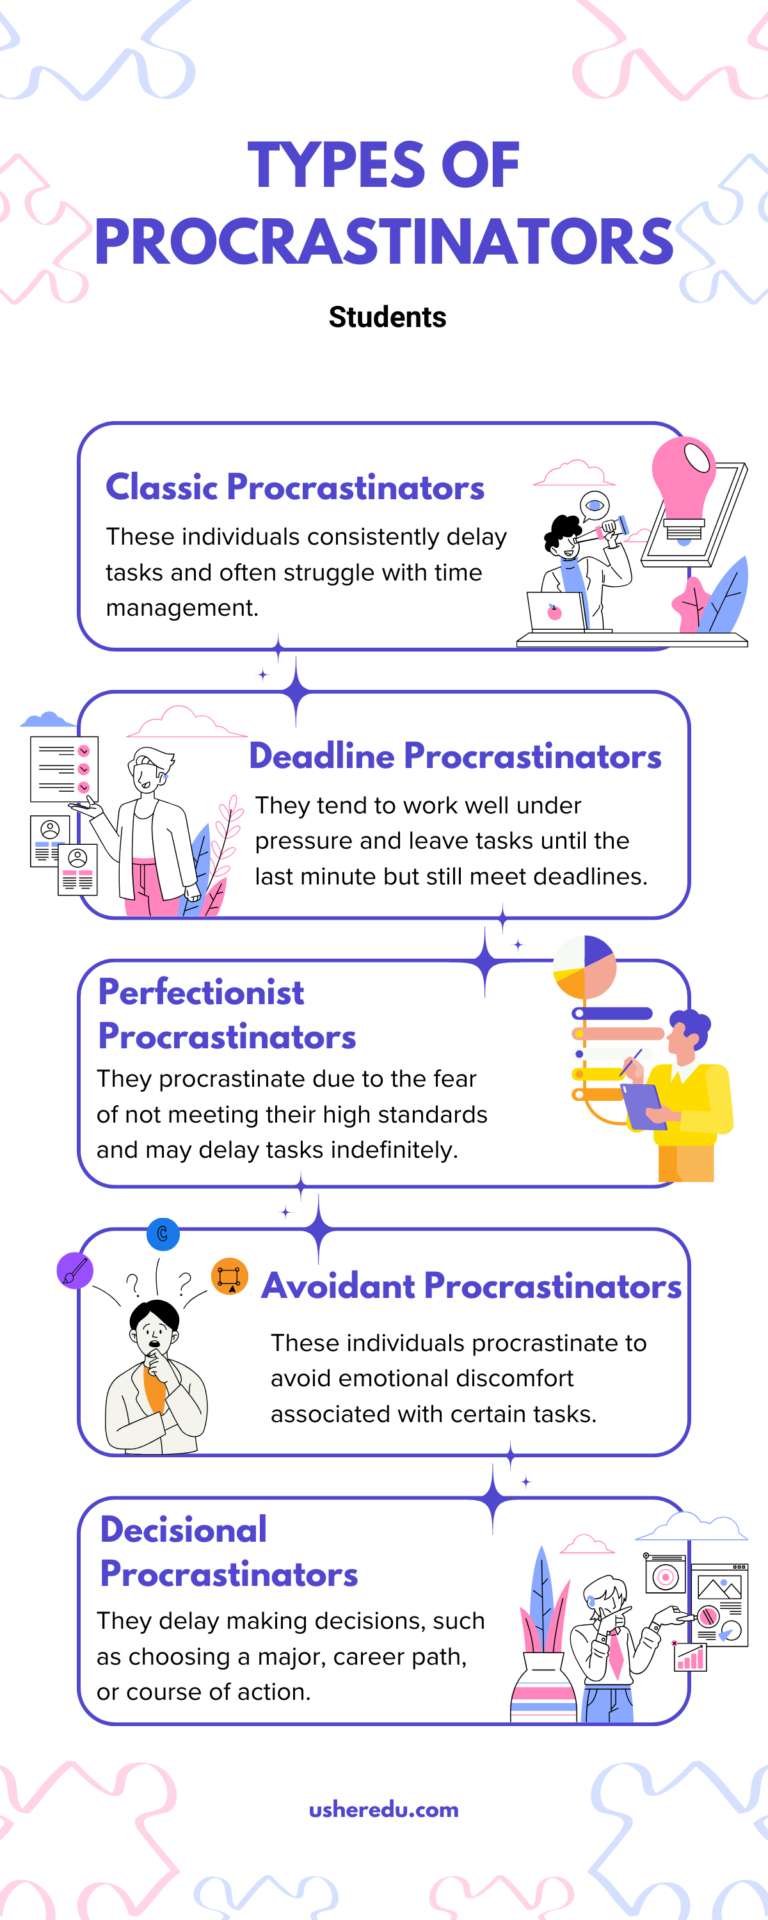 Types of Procrastinators in students